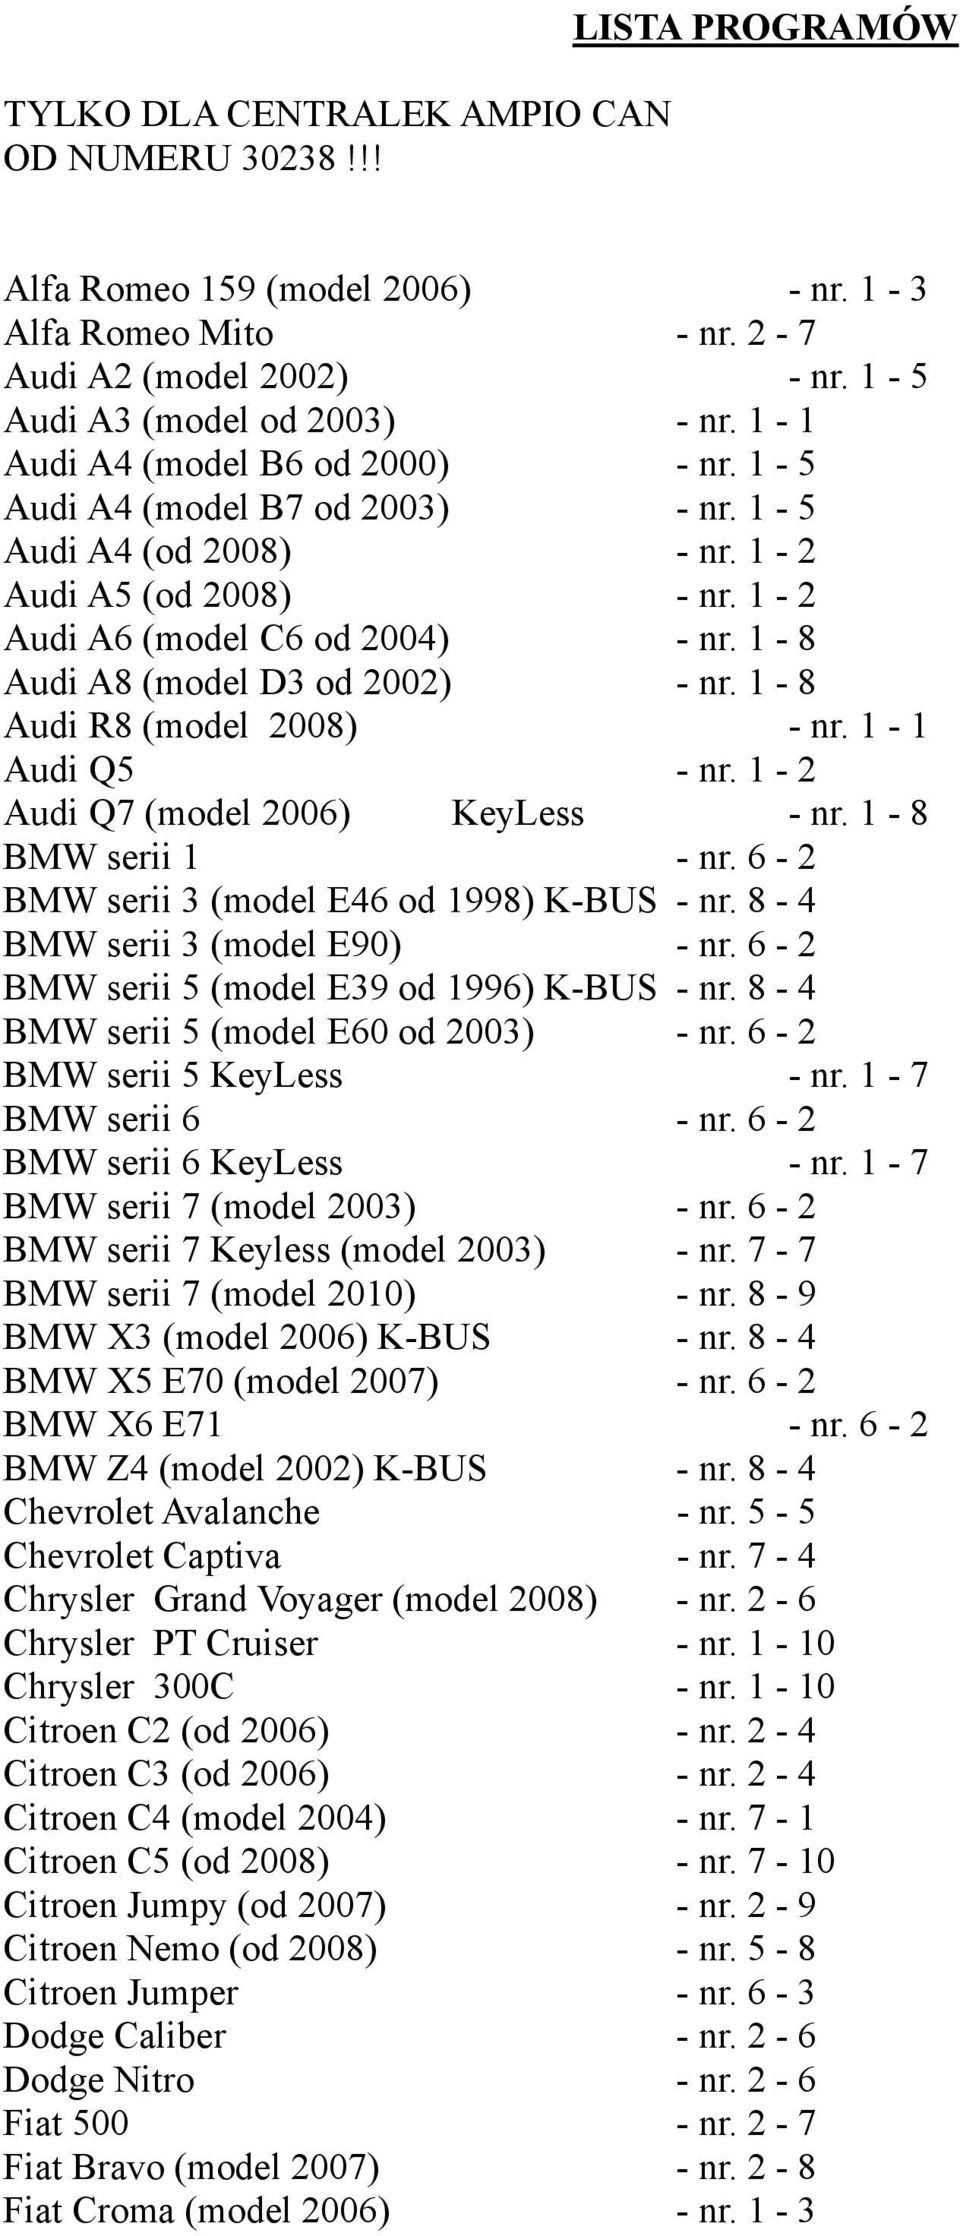 1-8 Audi A8 (model D3 od 2002) - nr. 1-8 Audi R8 (model 2008) - nr. 1-1 Audi Q5 - nr. 1-2 Audi Q7 (model 2006) KeyLess - nr. 1-8 BMW serii 1 - nr. 6-2 BMW serii 3 (model E46 od 1998) K-BUS - nr.